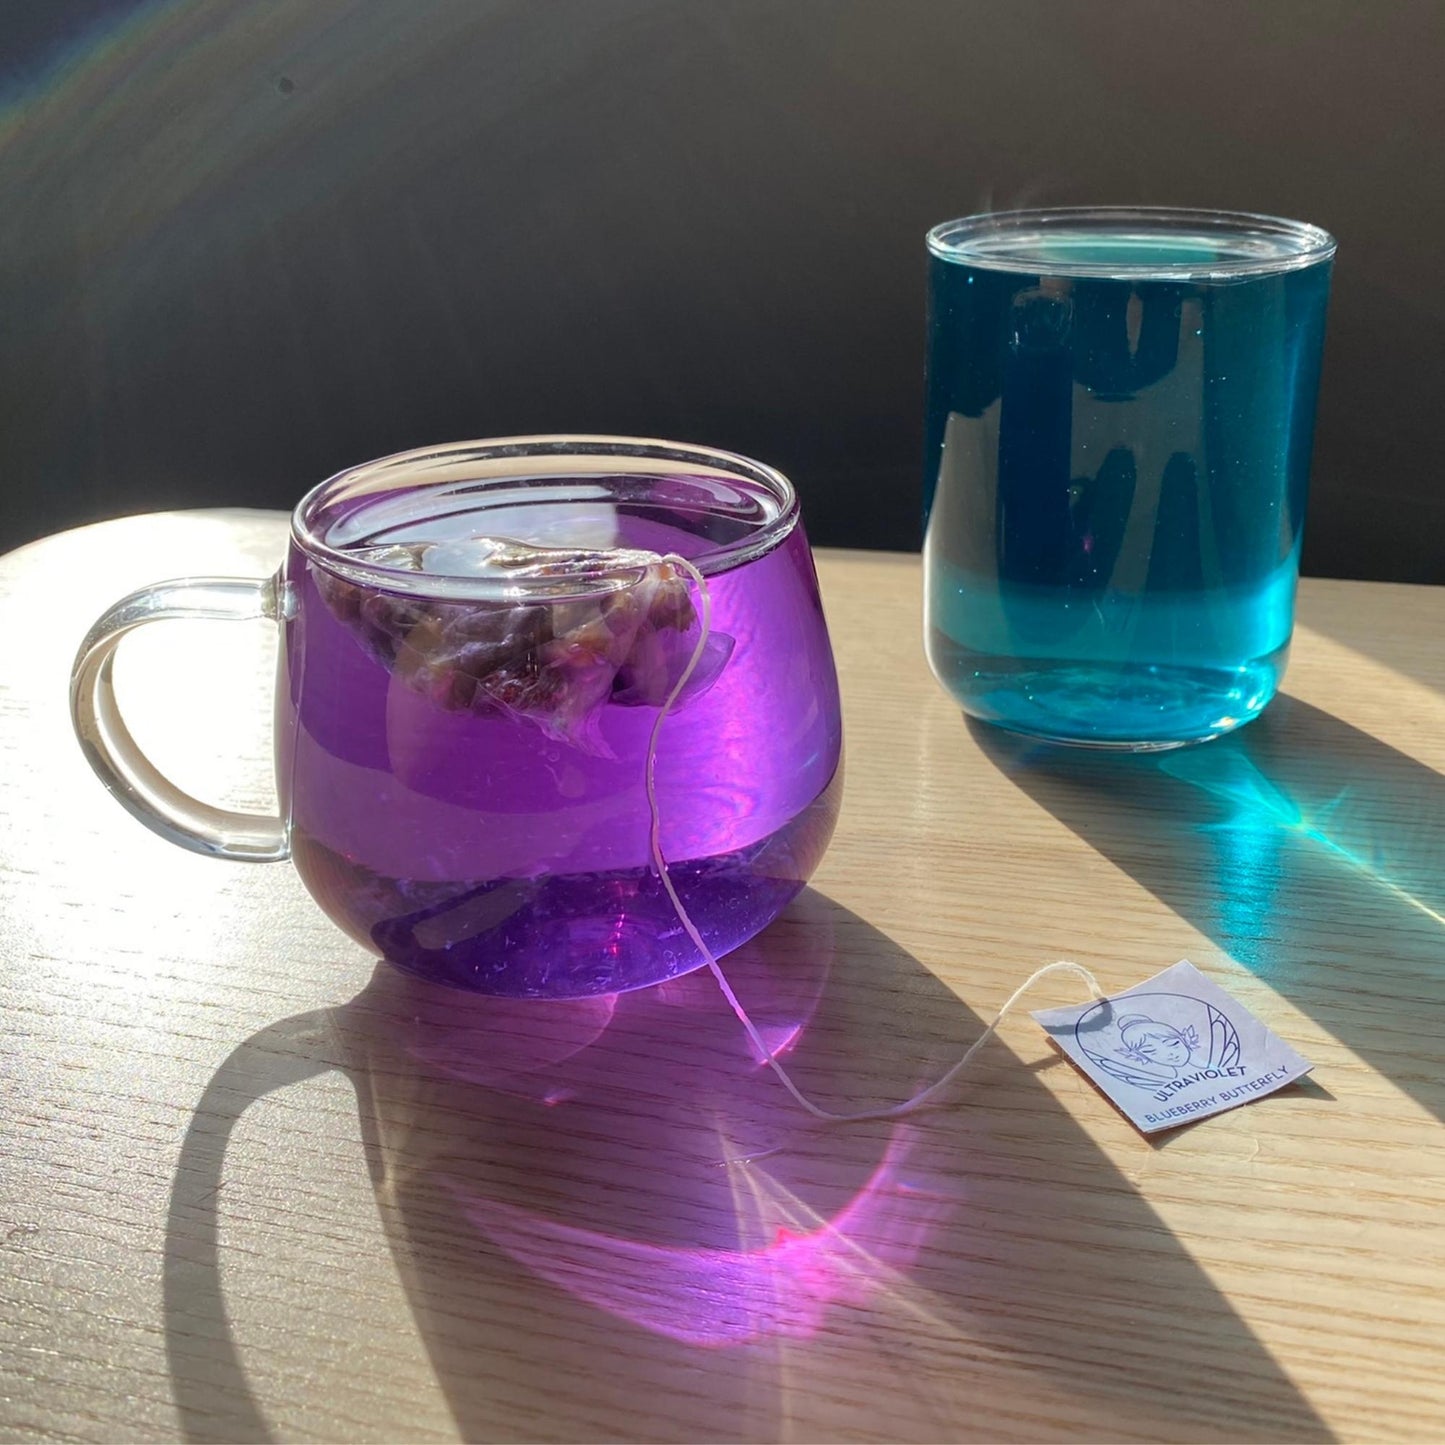 Blueberry Butterfly Tea | Butterfly Pea Flower Tea